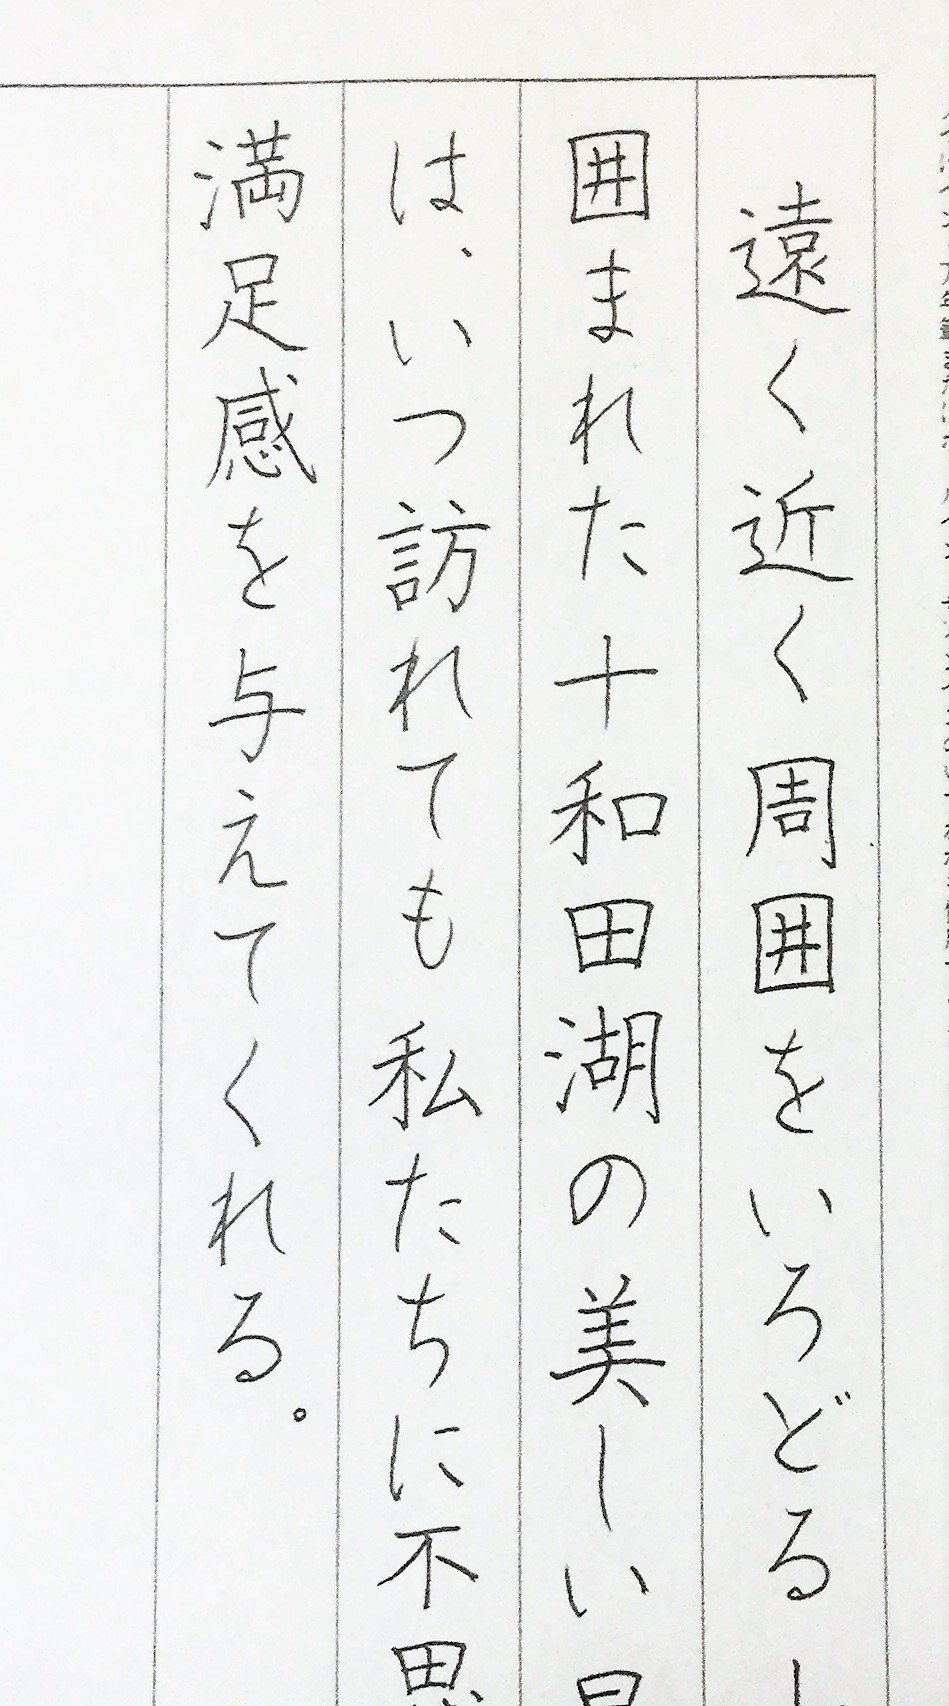 上品で美しい字が書ける 大人の平仮名表 赤松久美子 Note